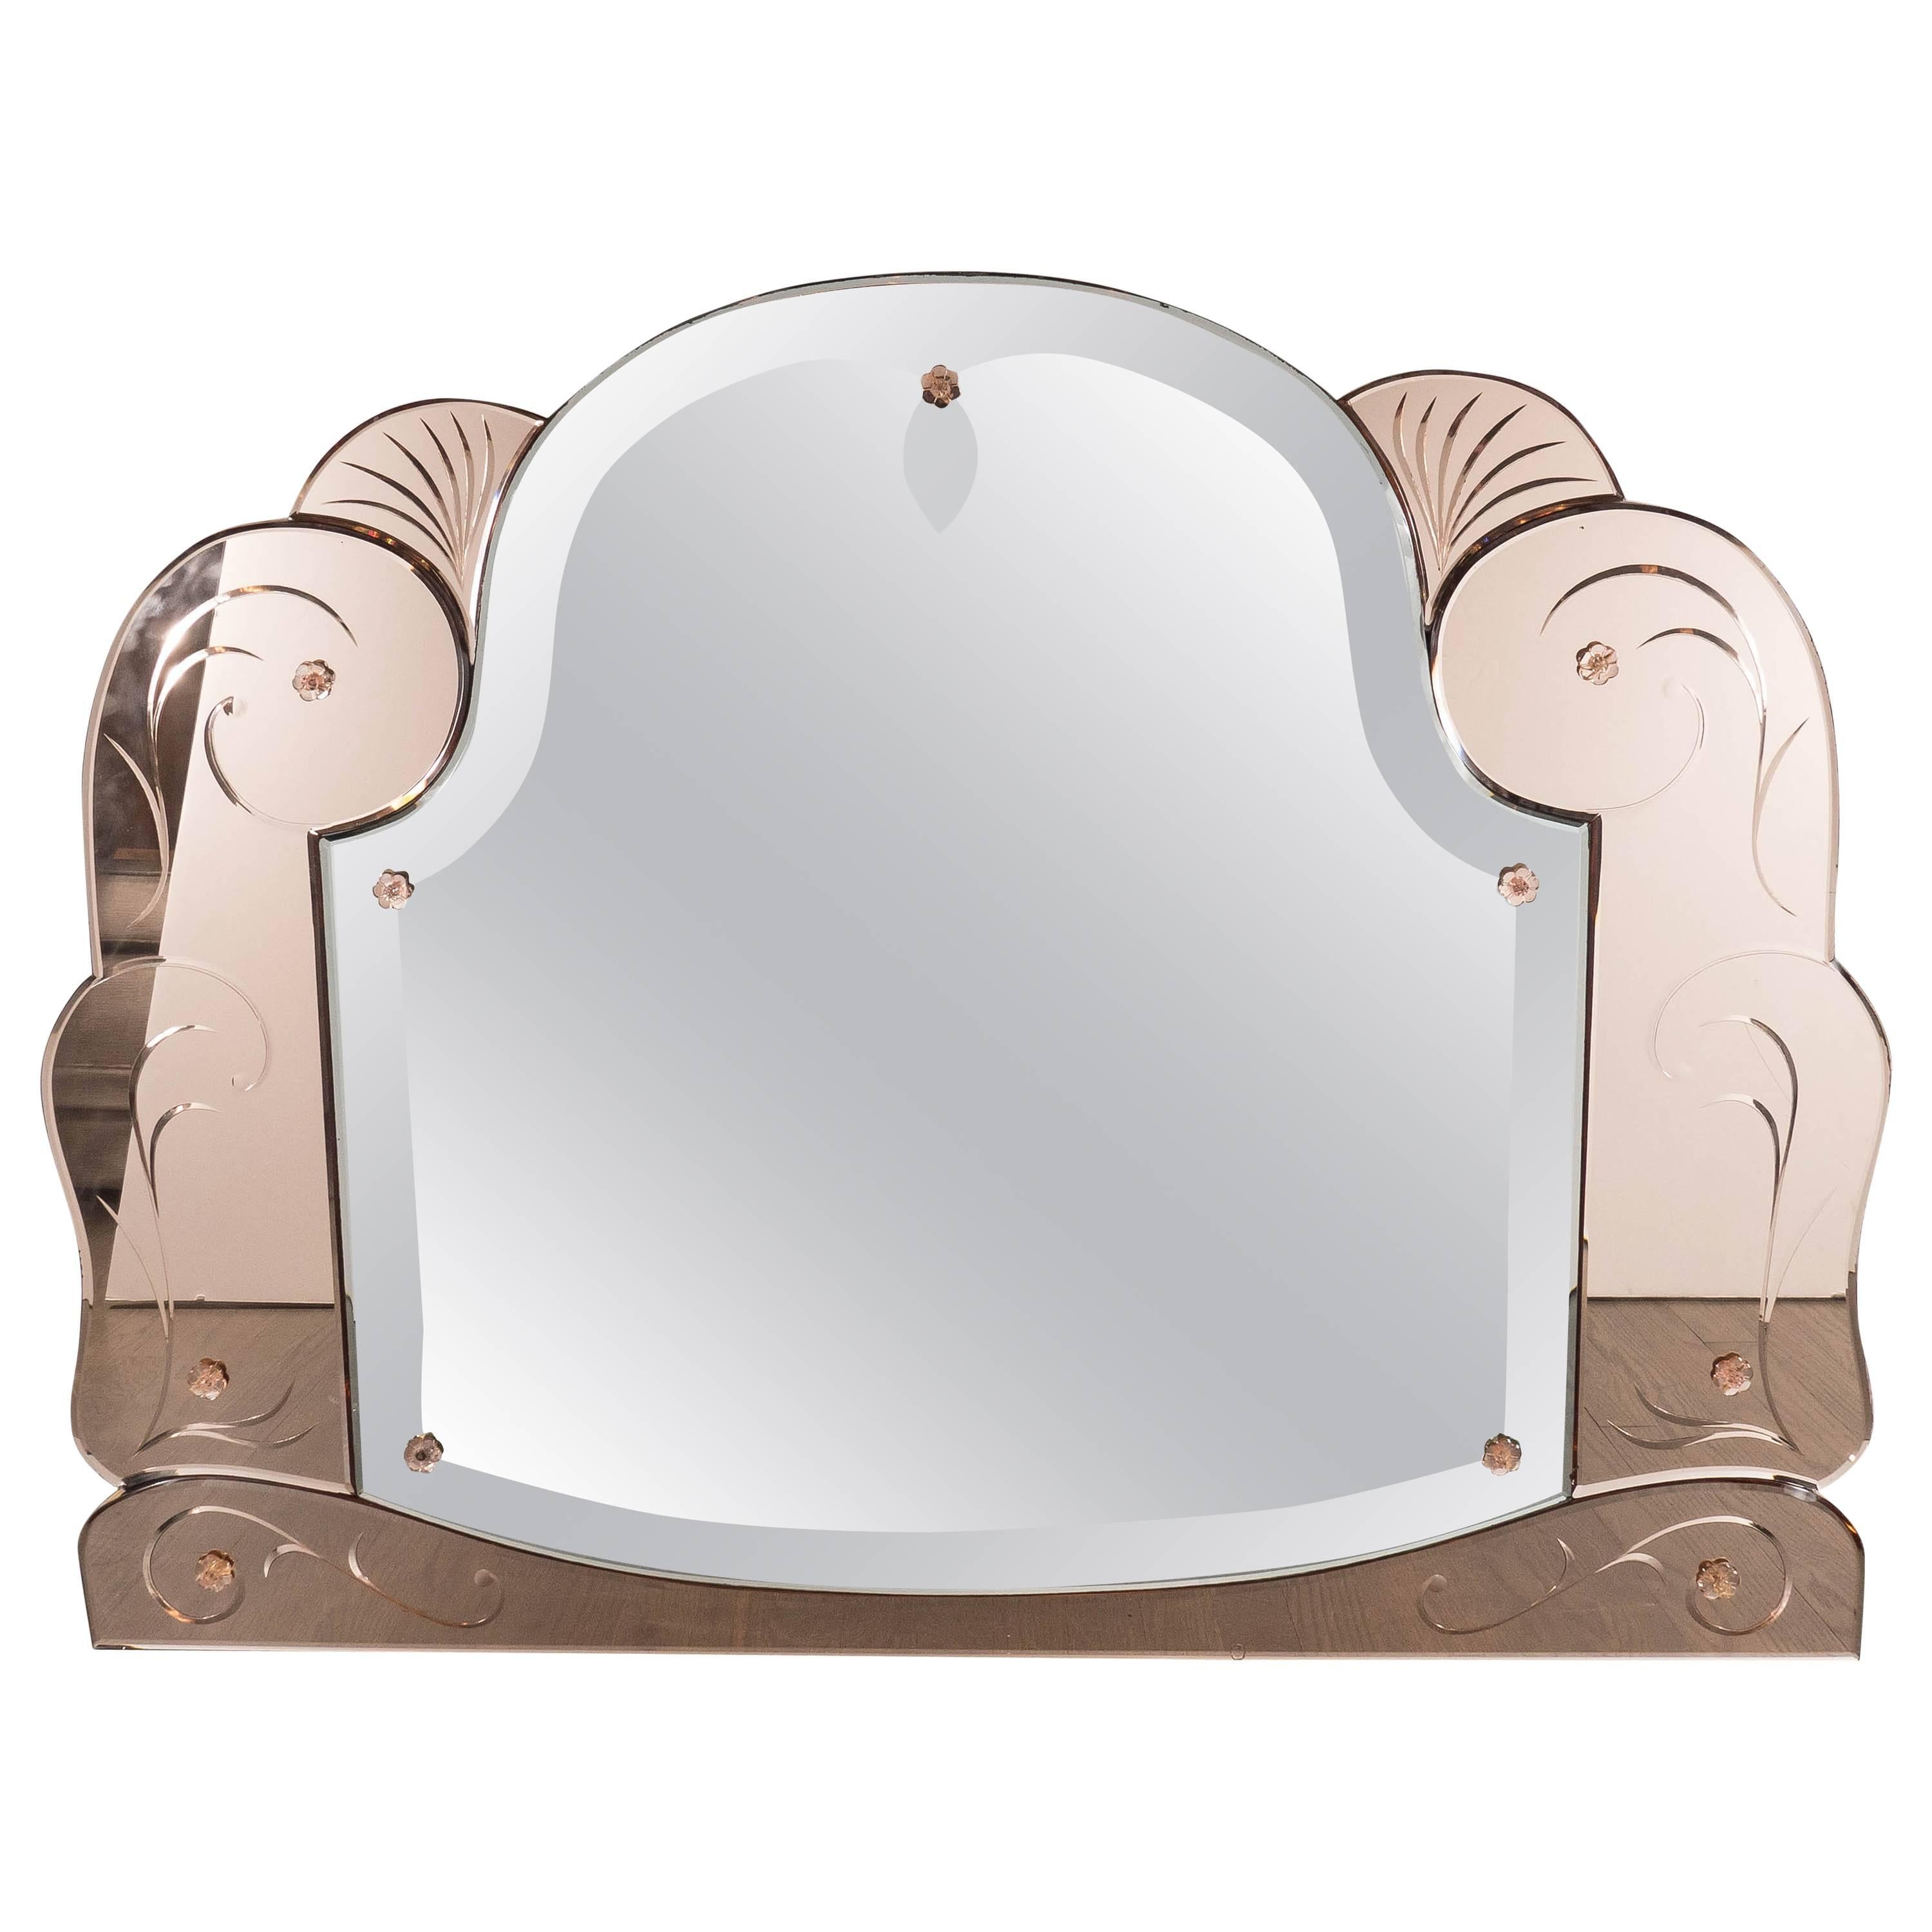 Art Deco Scroll Form Mirror with Copper-Tone Mirror Border